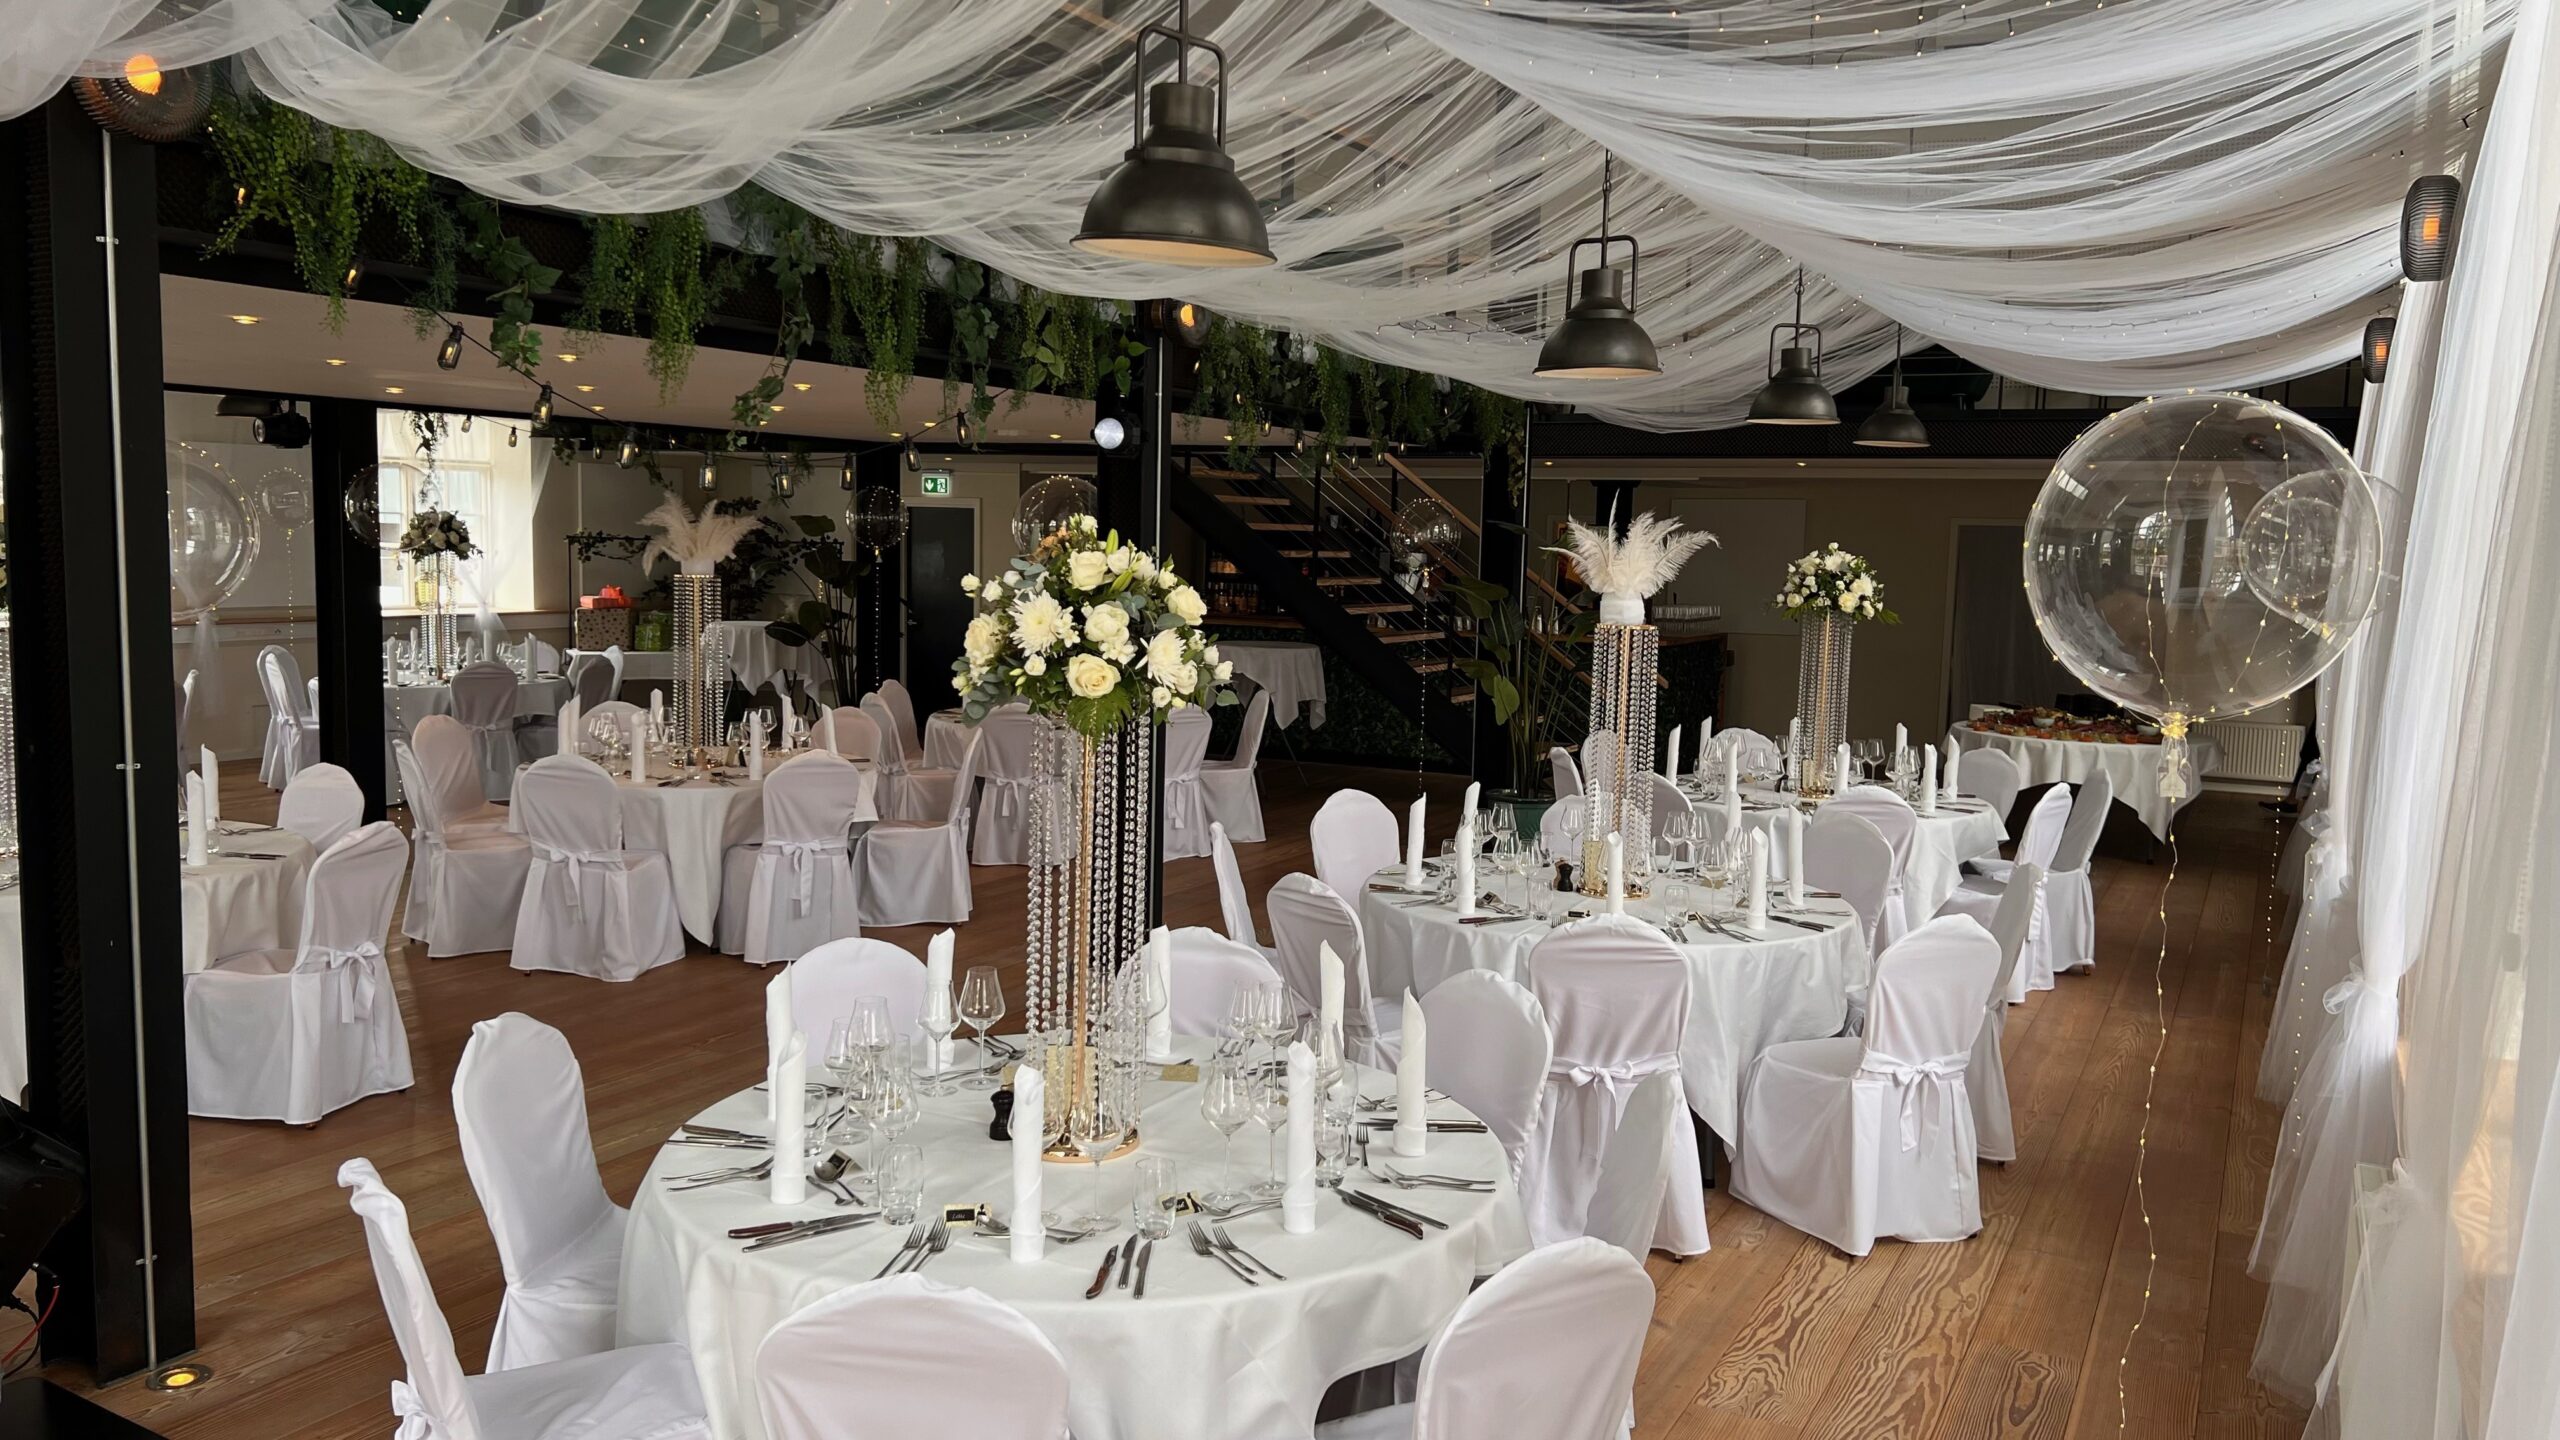 Hold bryllup i Vejen i imponerende omgivelser | Restaurant Alfa